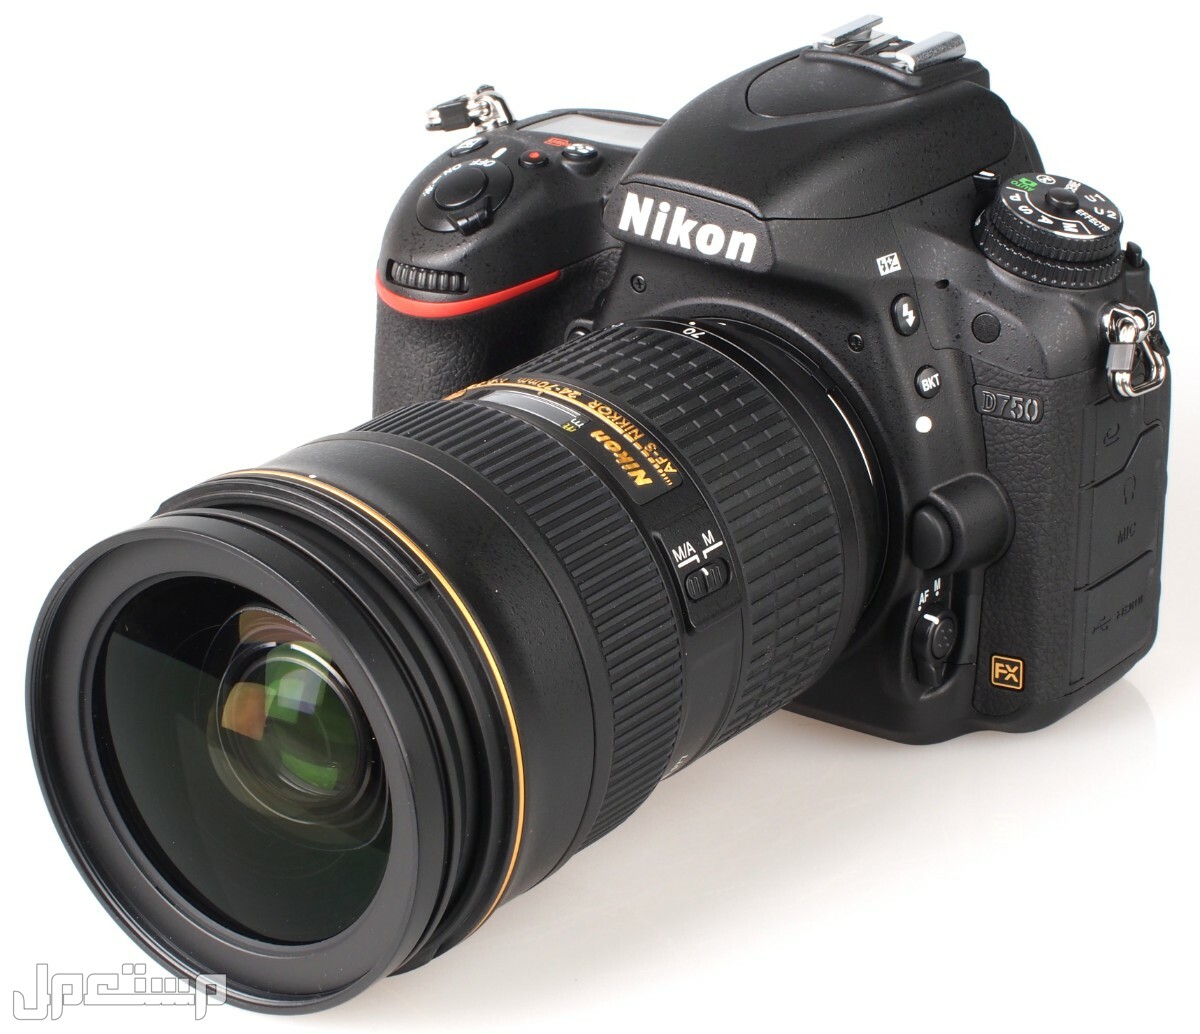 مواصفات ومميزات وأسعار أفضل أنواع كاميرات نيكون للمحترفين في الإمارات العربية المتحدة كاميرا Nikon D750